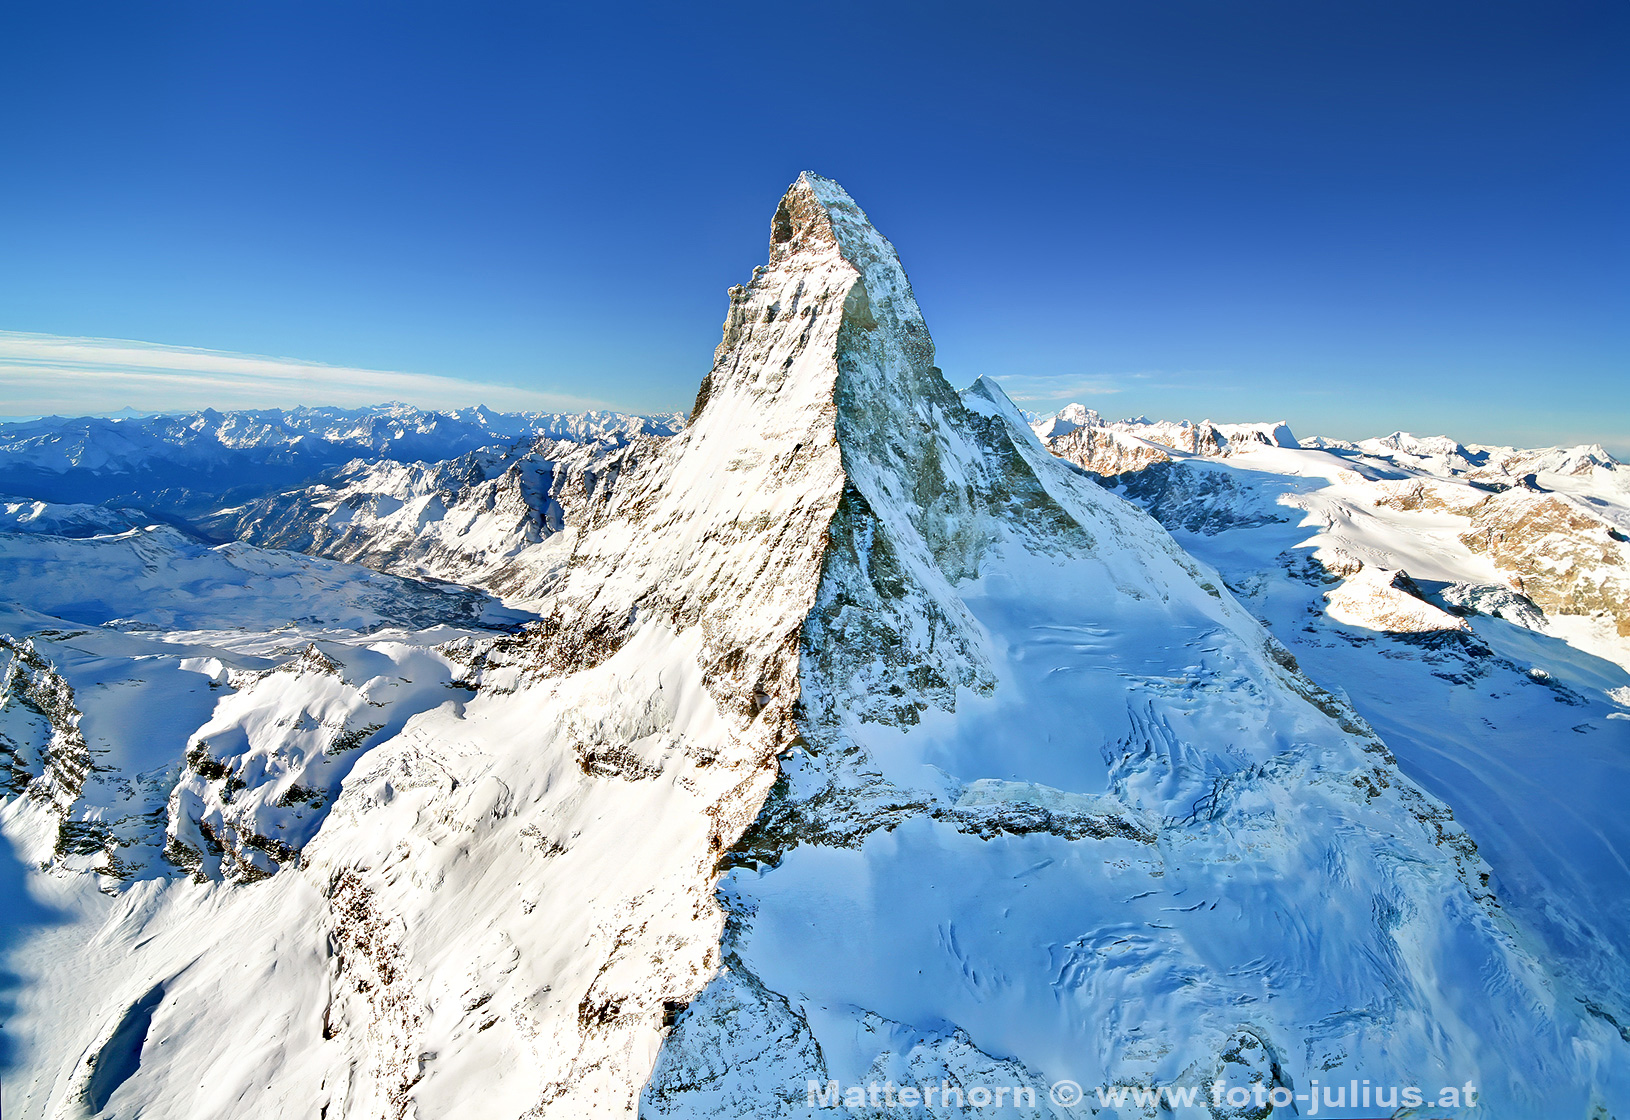 0602a_Matterhorn.jpg, 846kB